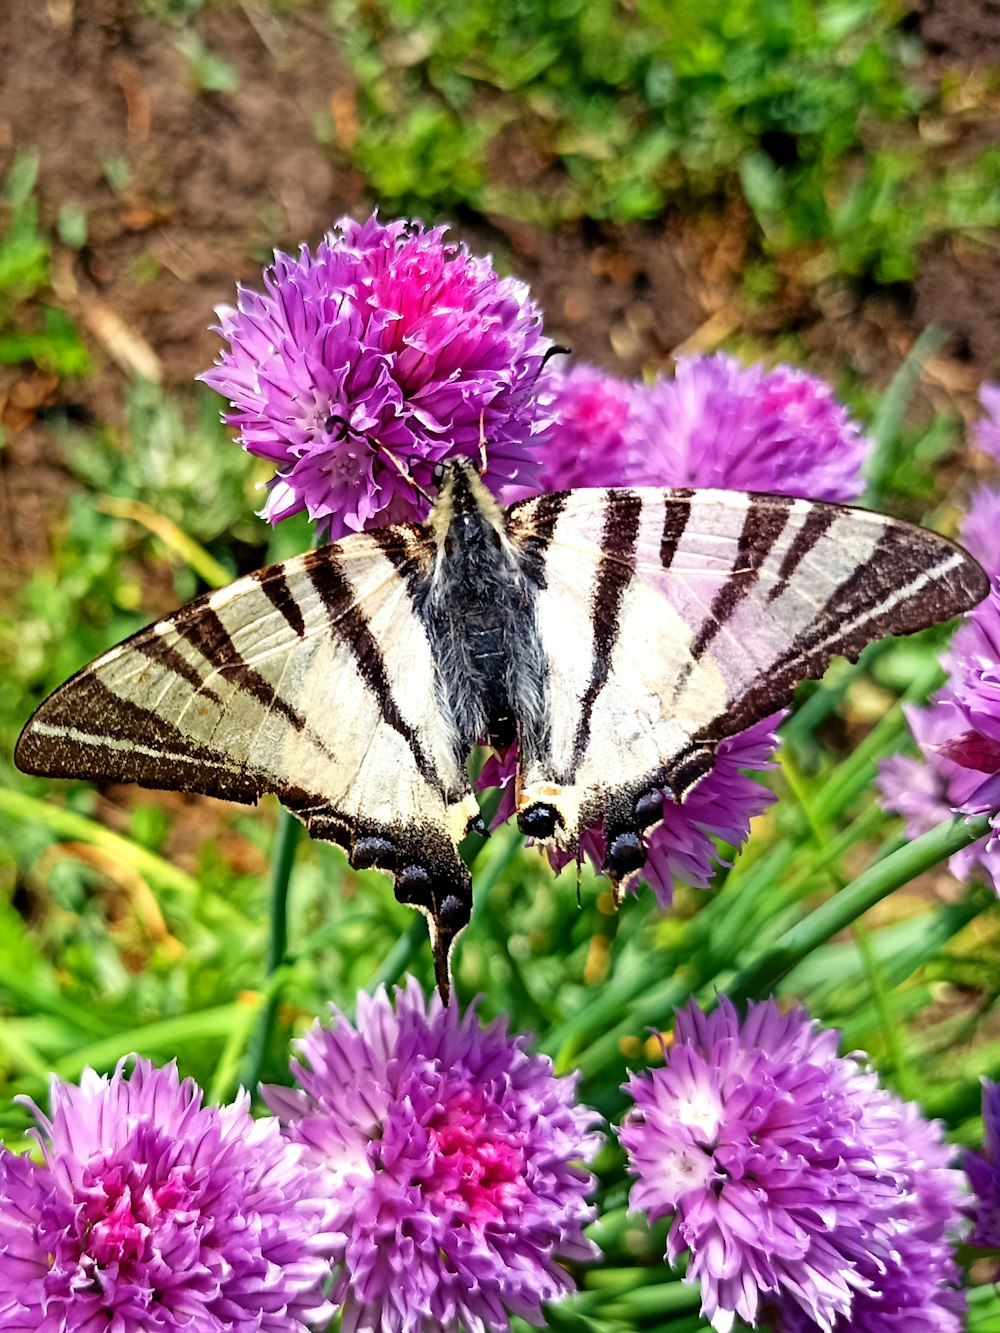 a butterfly is sitting on a purple flower